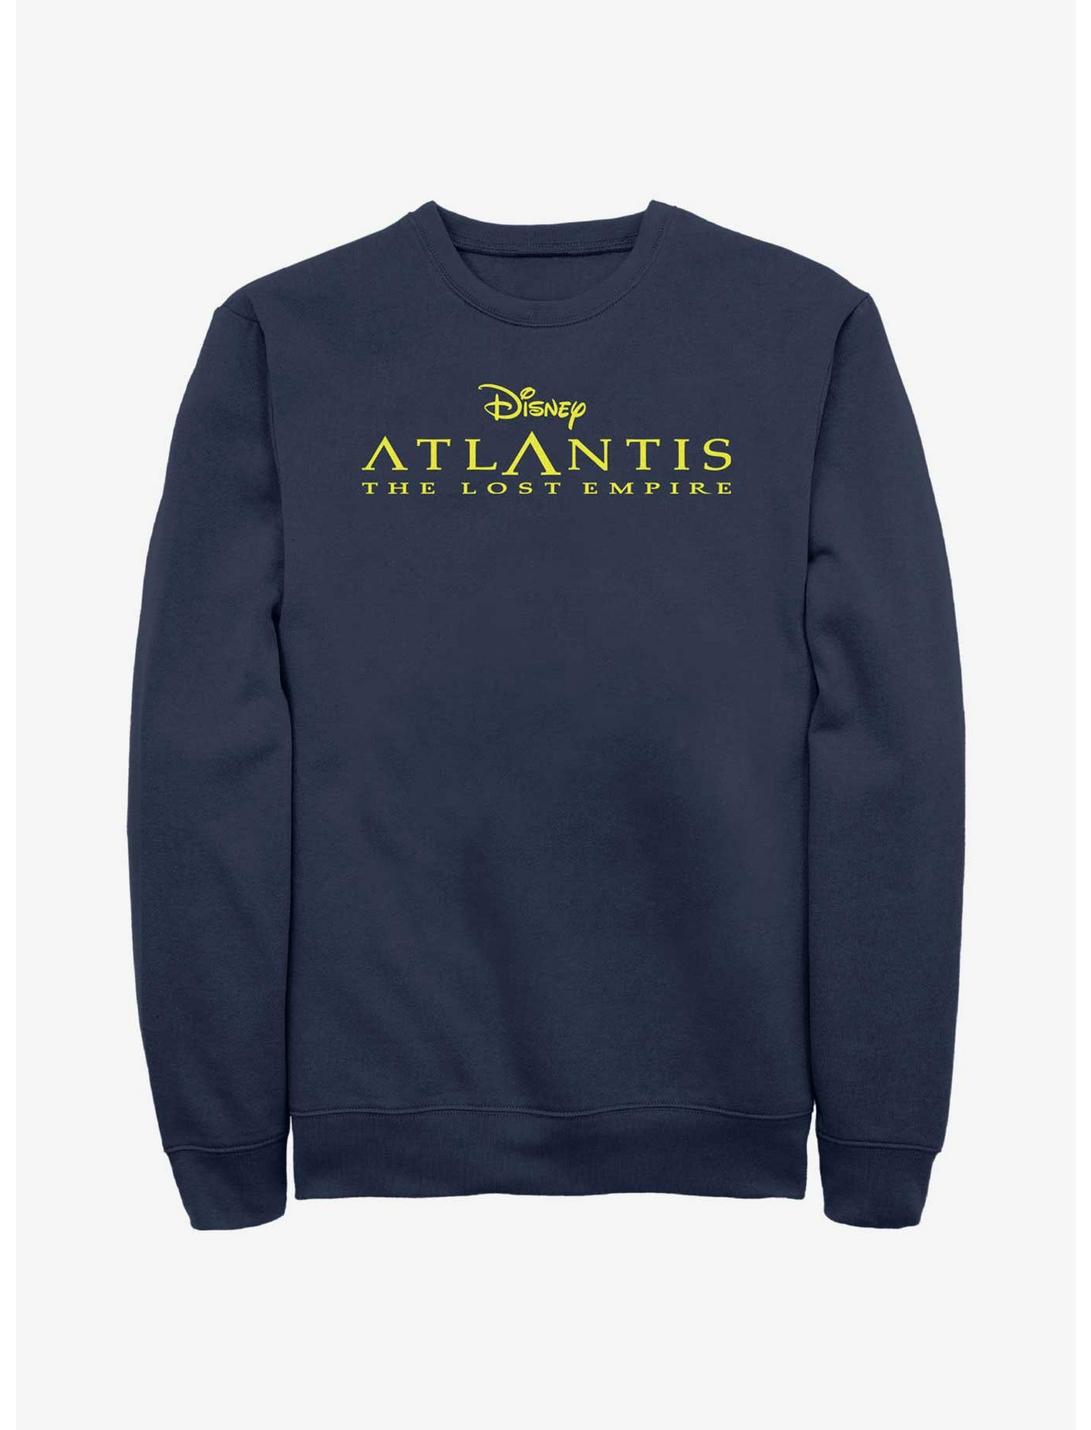 Disney Atlantis: The Lost Empire Logo Sweatshirt, NAVY, hi-res